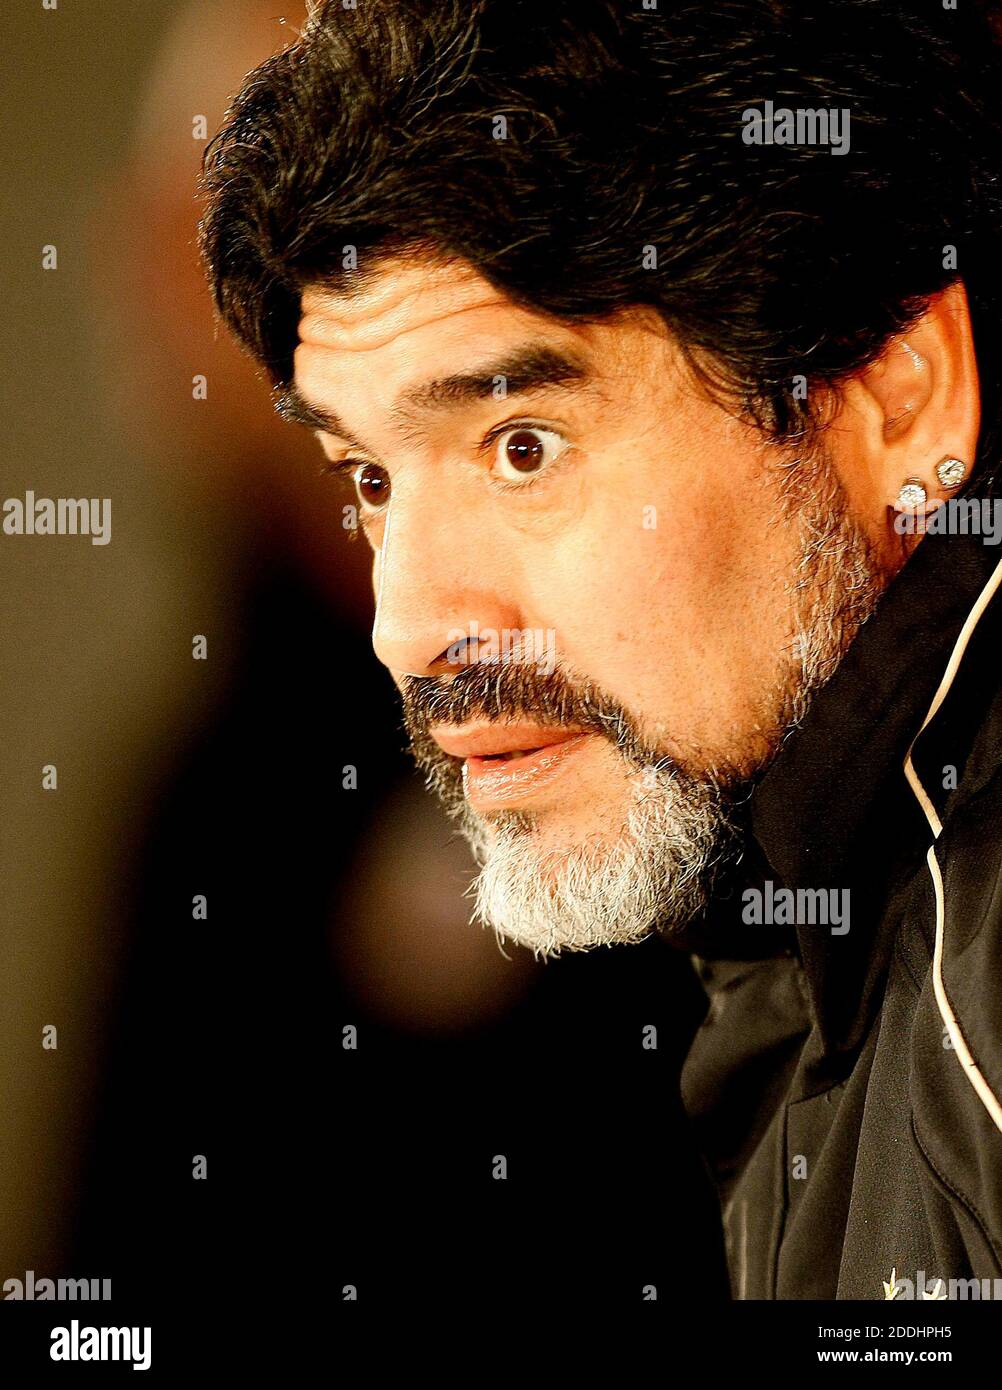 25 novembre 2020; Stock picture from archive; l'ex giocatore argentino, Diego Maradona, muore all'età di 60 anni, dopo che l'ex centrocampista argentino attaccante e manager ha subito un attacco di cuore nella sua casa di Buenos Aires. Foto Stock